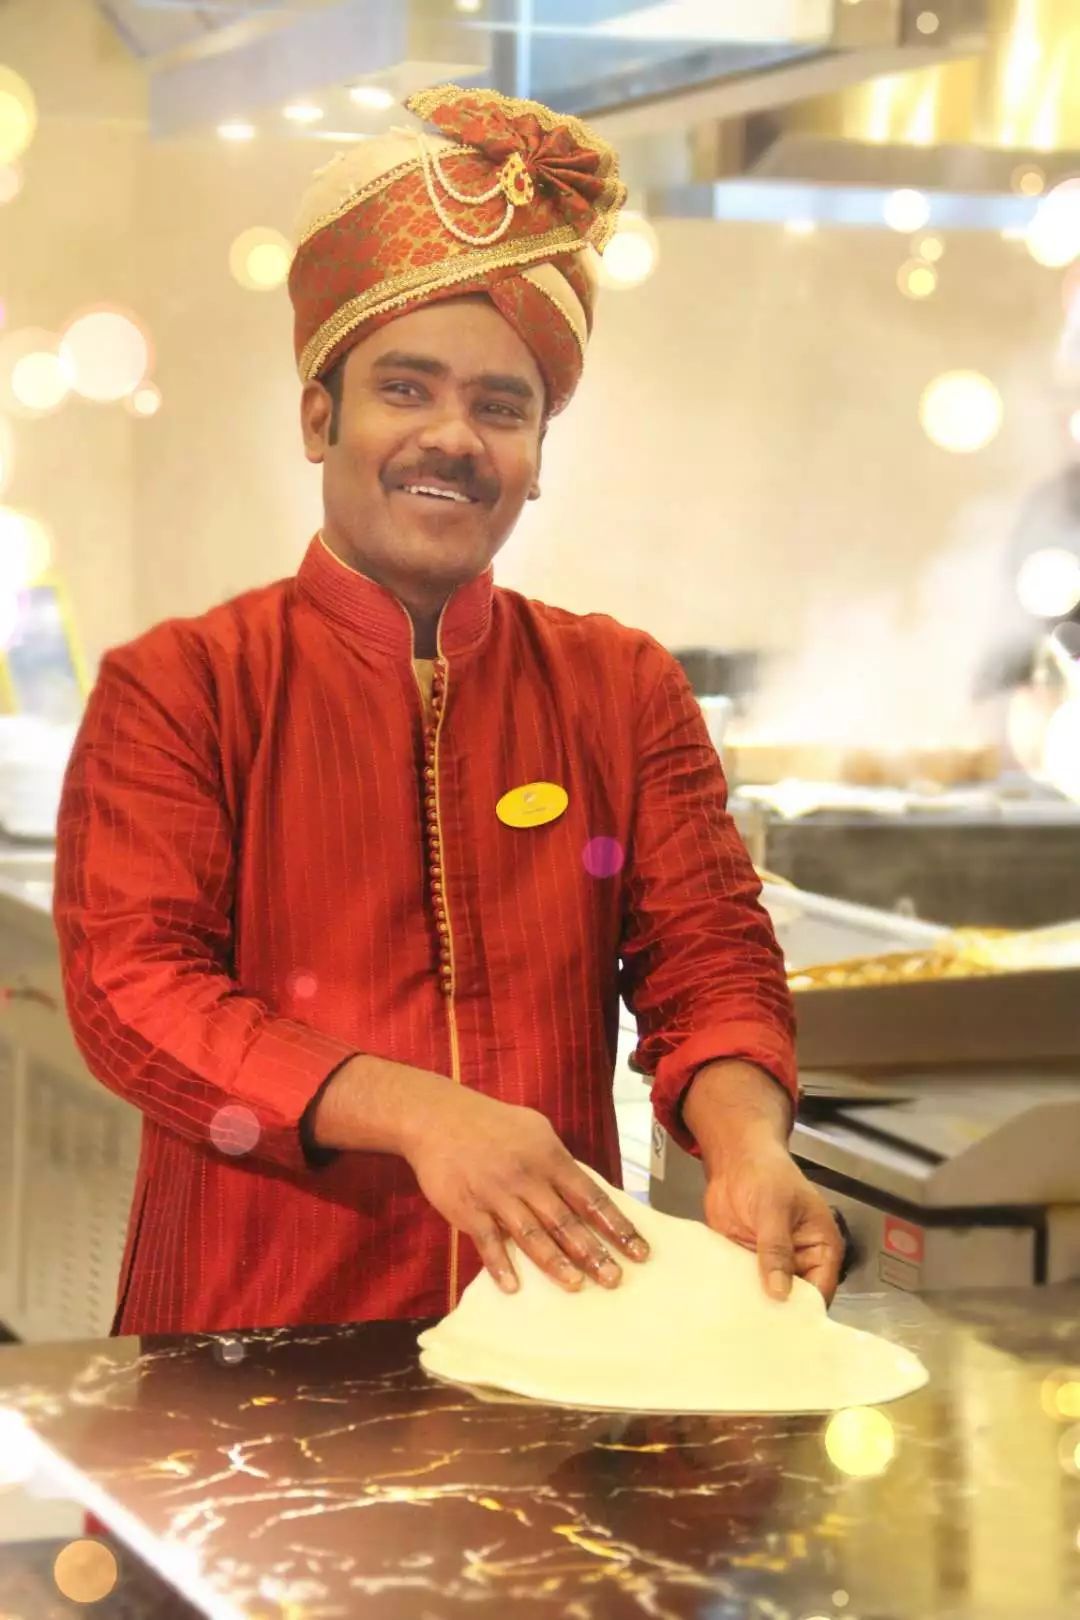 并拥有7年的制作印度飞饼的经验来自印度马德里sivalingam拥有20年